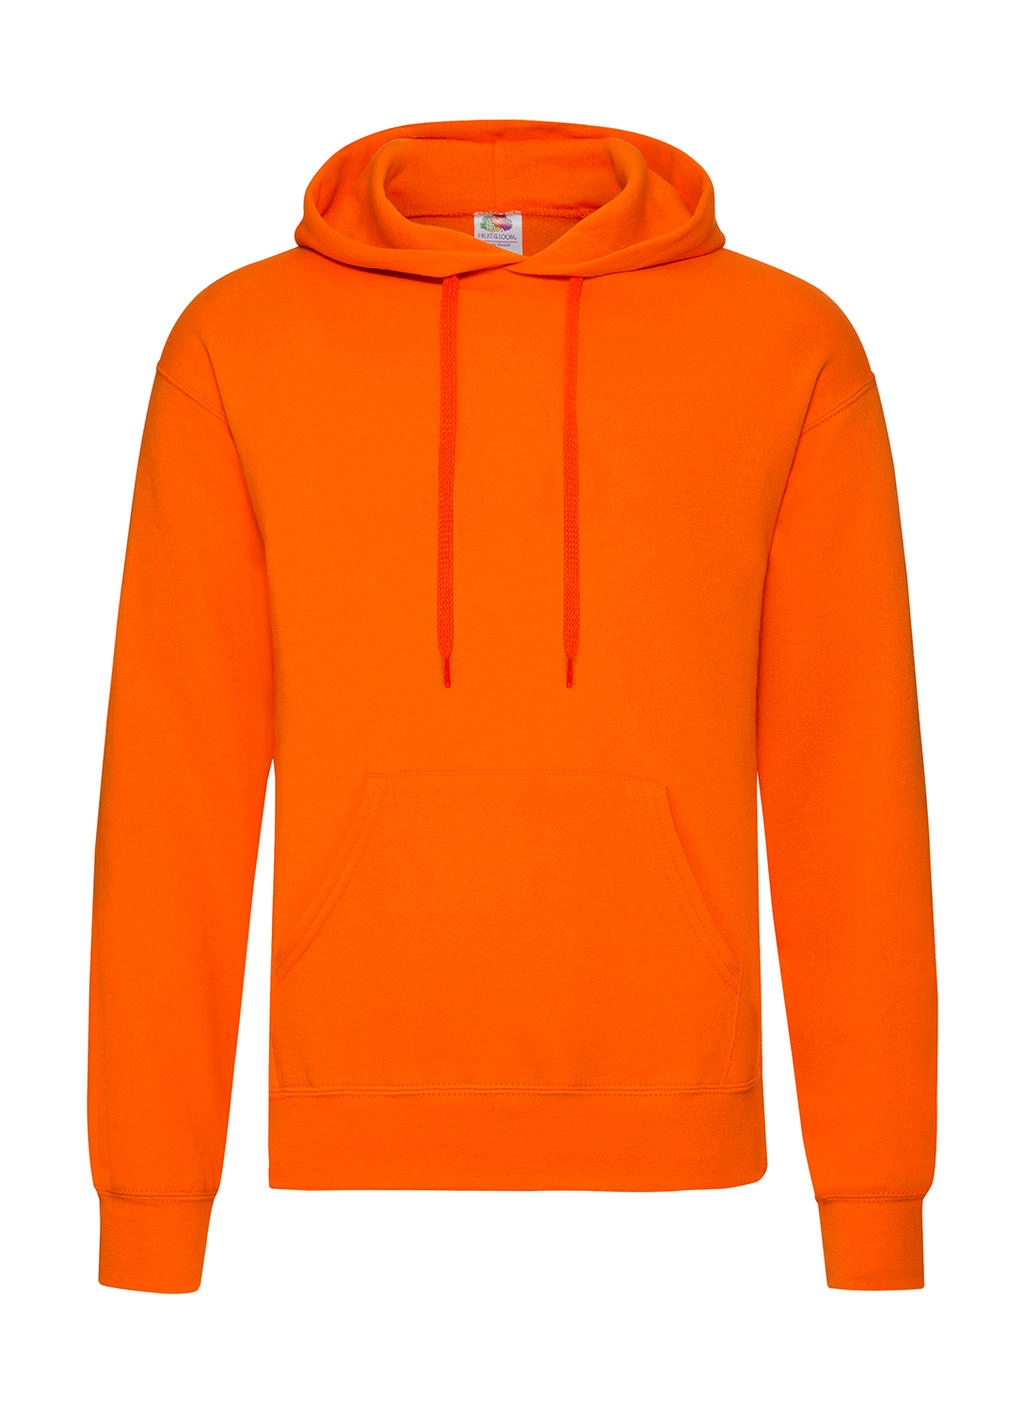 Classic Hooded Sweat zum Besticken und Bedrucken in der Farbe Orange mit Ihren Logo, Schriftzug oder Motiv.